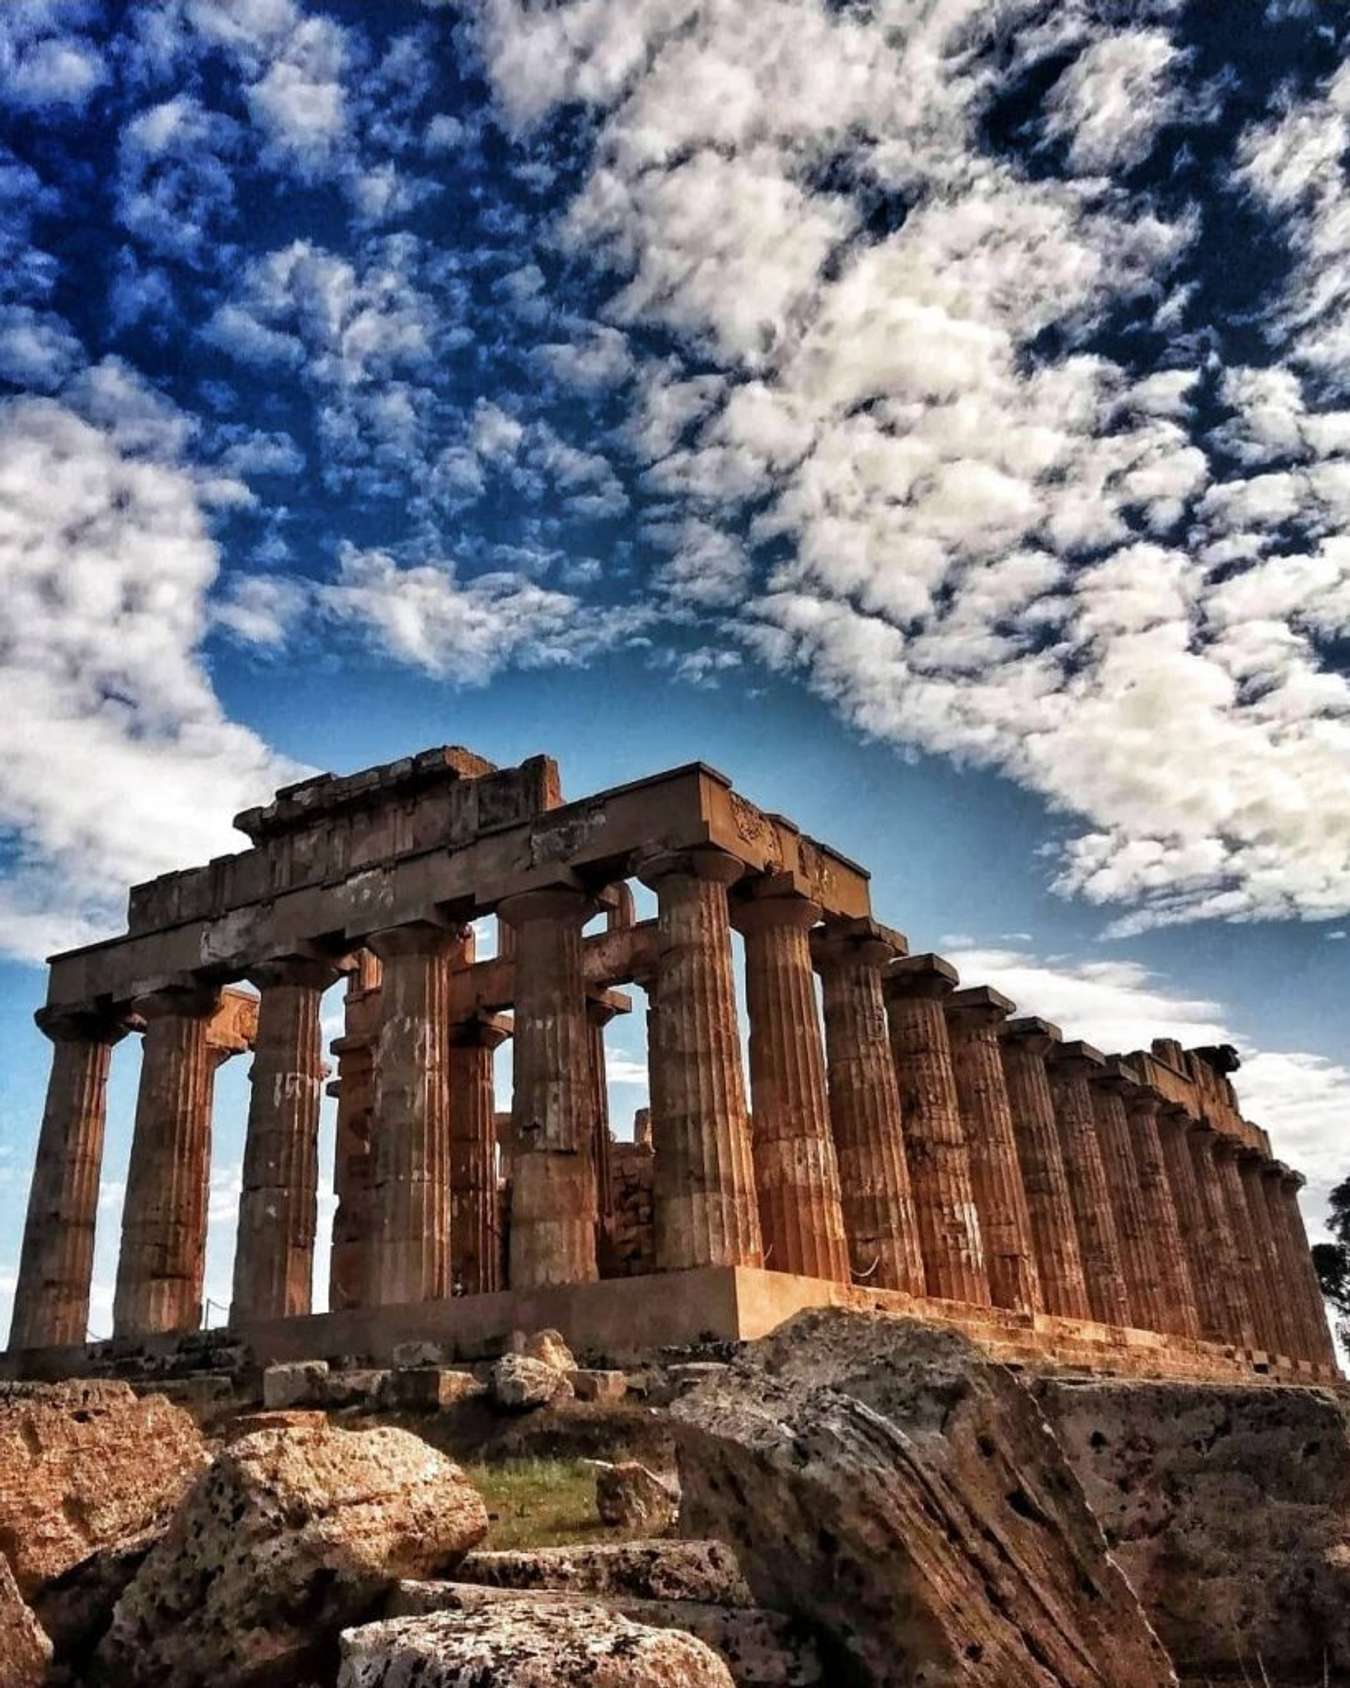 Hãy cùng trải nghiệm du lịch Hy Lạp tuyệt vời qua những bức ảnh đẹp như tranh. Khám phá những địa điểm du lịch nổi tiếng như Santorini, Athens hay Thành phố Hydra, sản phẩm của một quốc gia lâu đời và mang vẻ đẹp cổ kính. Với những tầm nhìn và khung cảnh đẹp lung linh, chắc chắn bạn sẽ không muốn rời khỏi đất nước Hy Lạp.